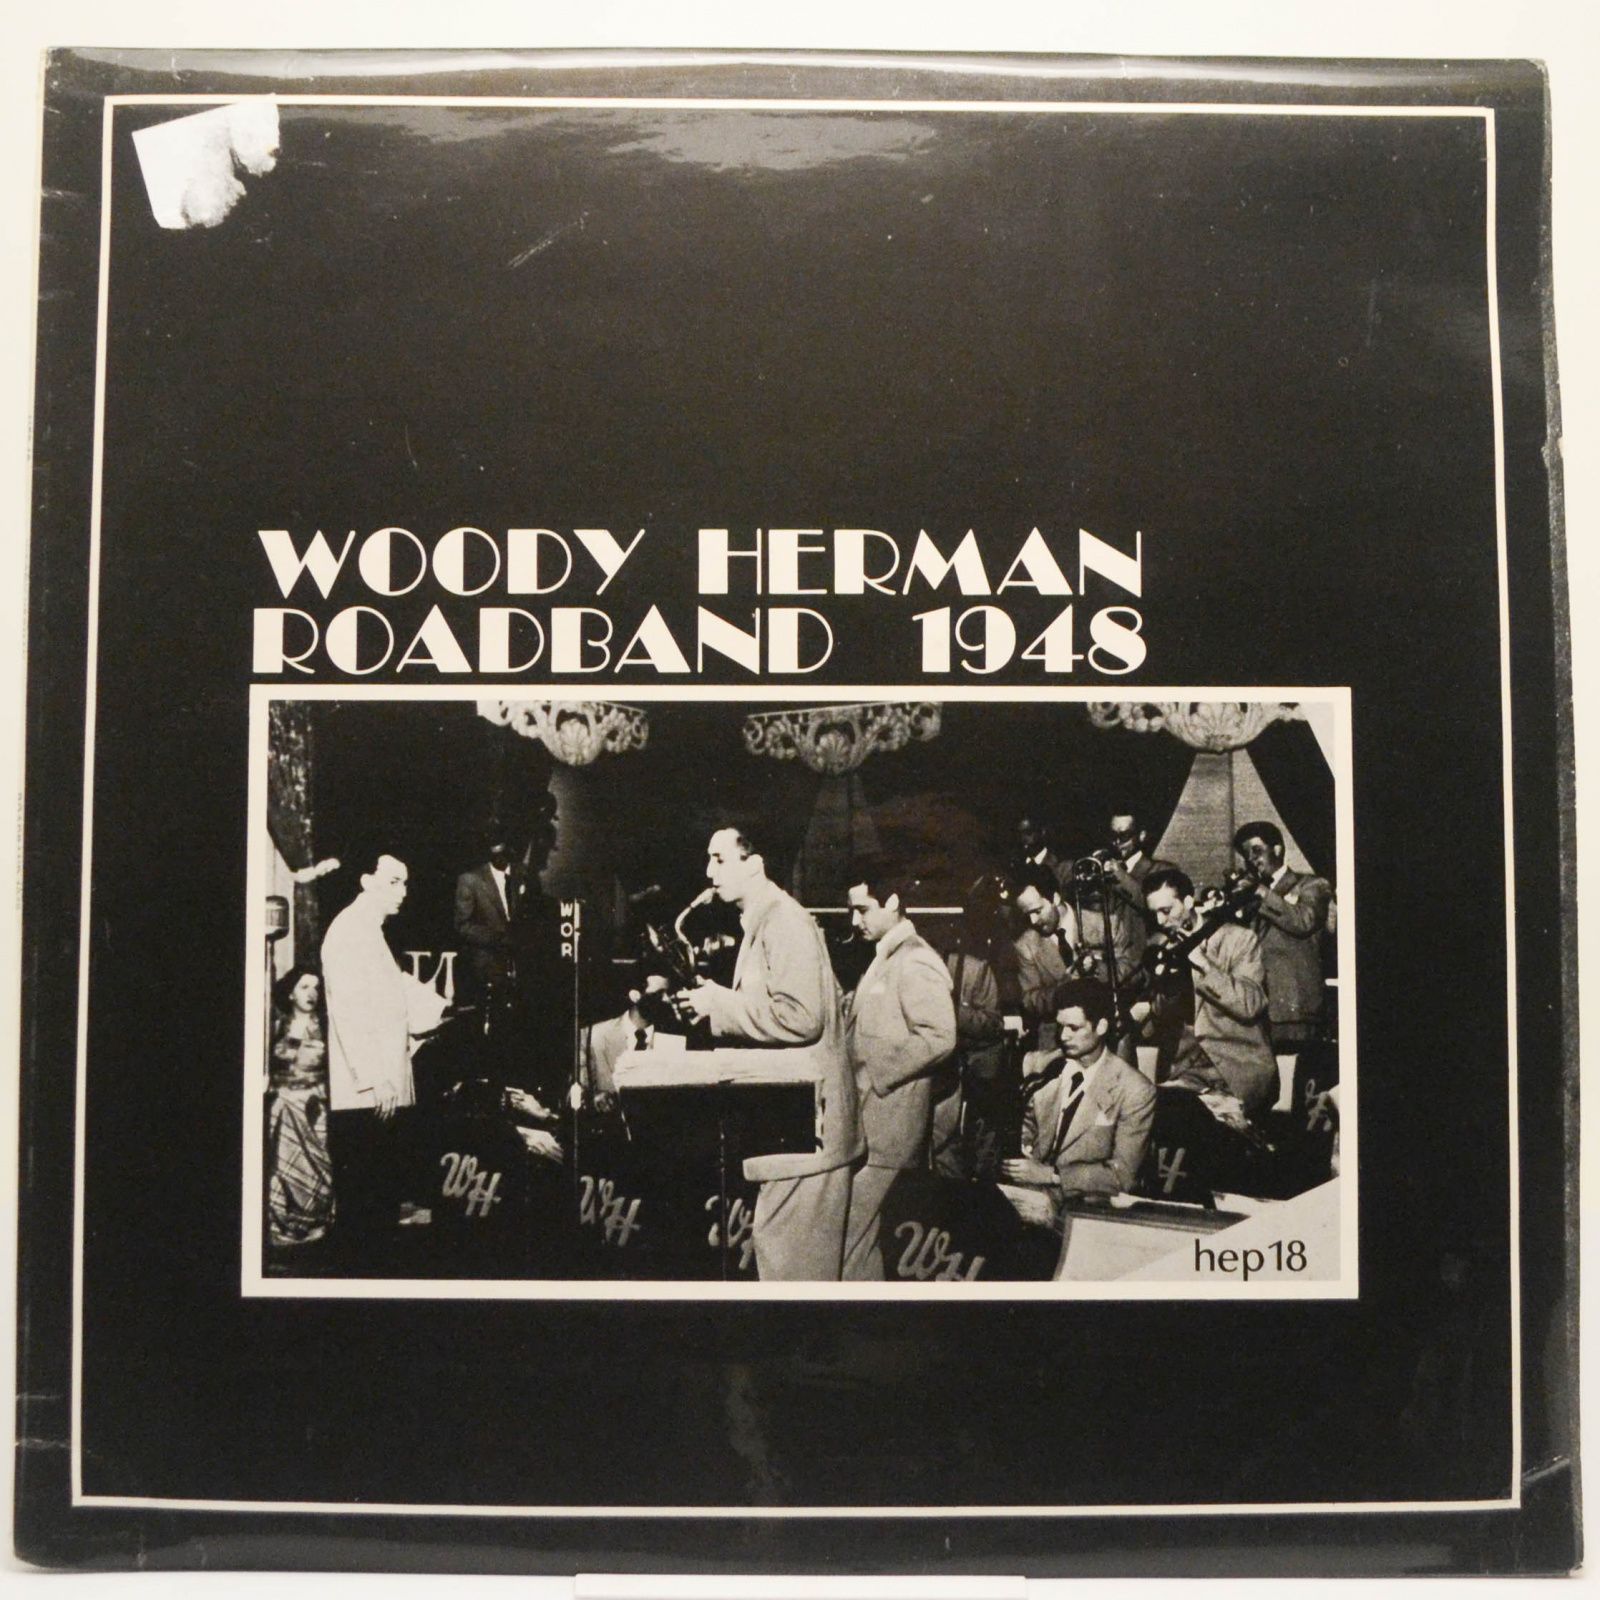 Woody Herman Roadband — Woody Herman Roadband 1948, 1978